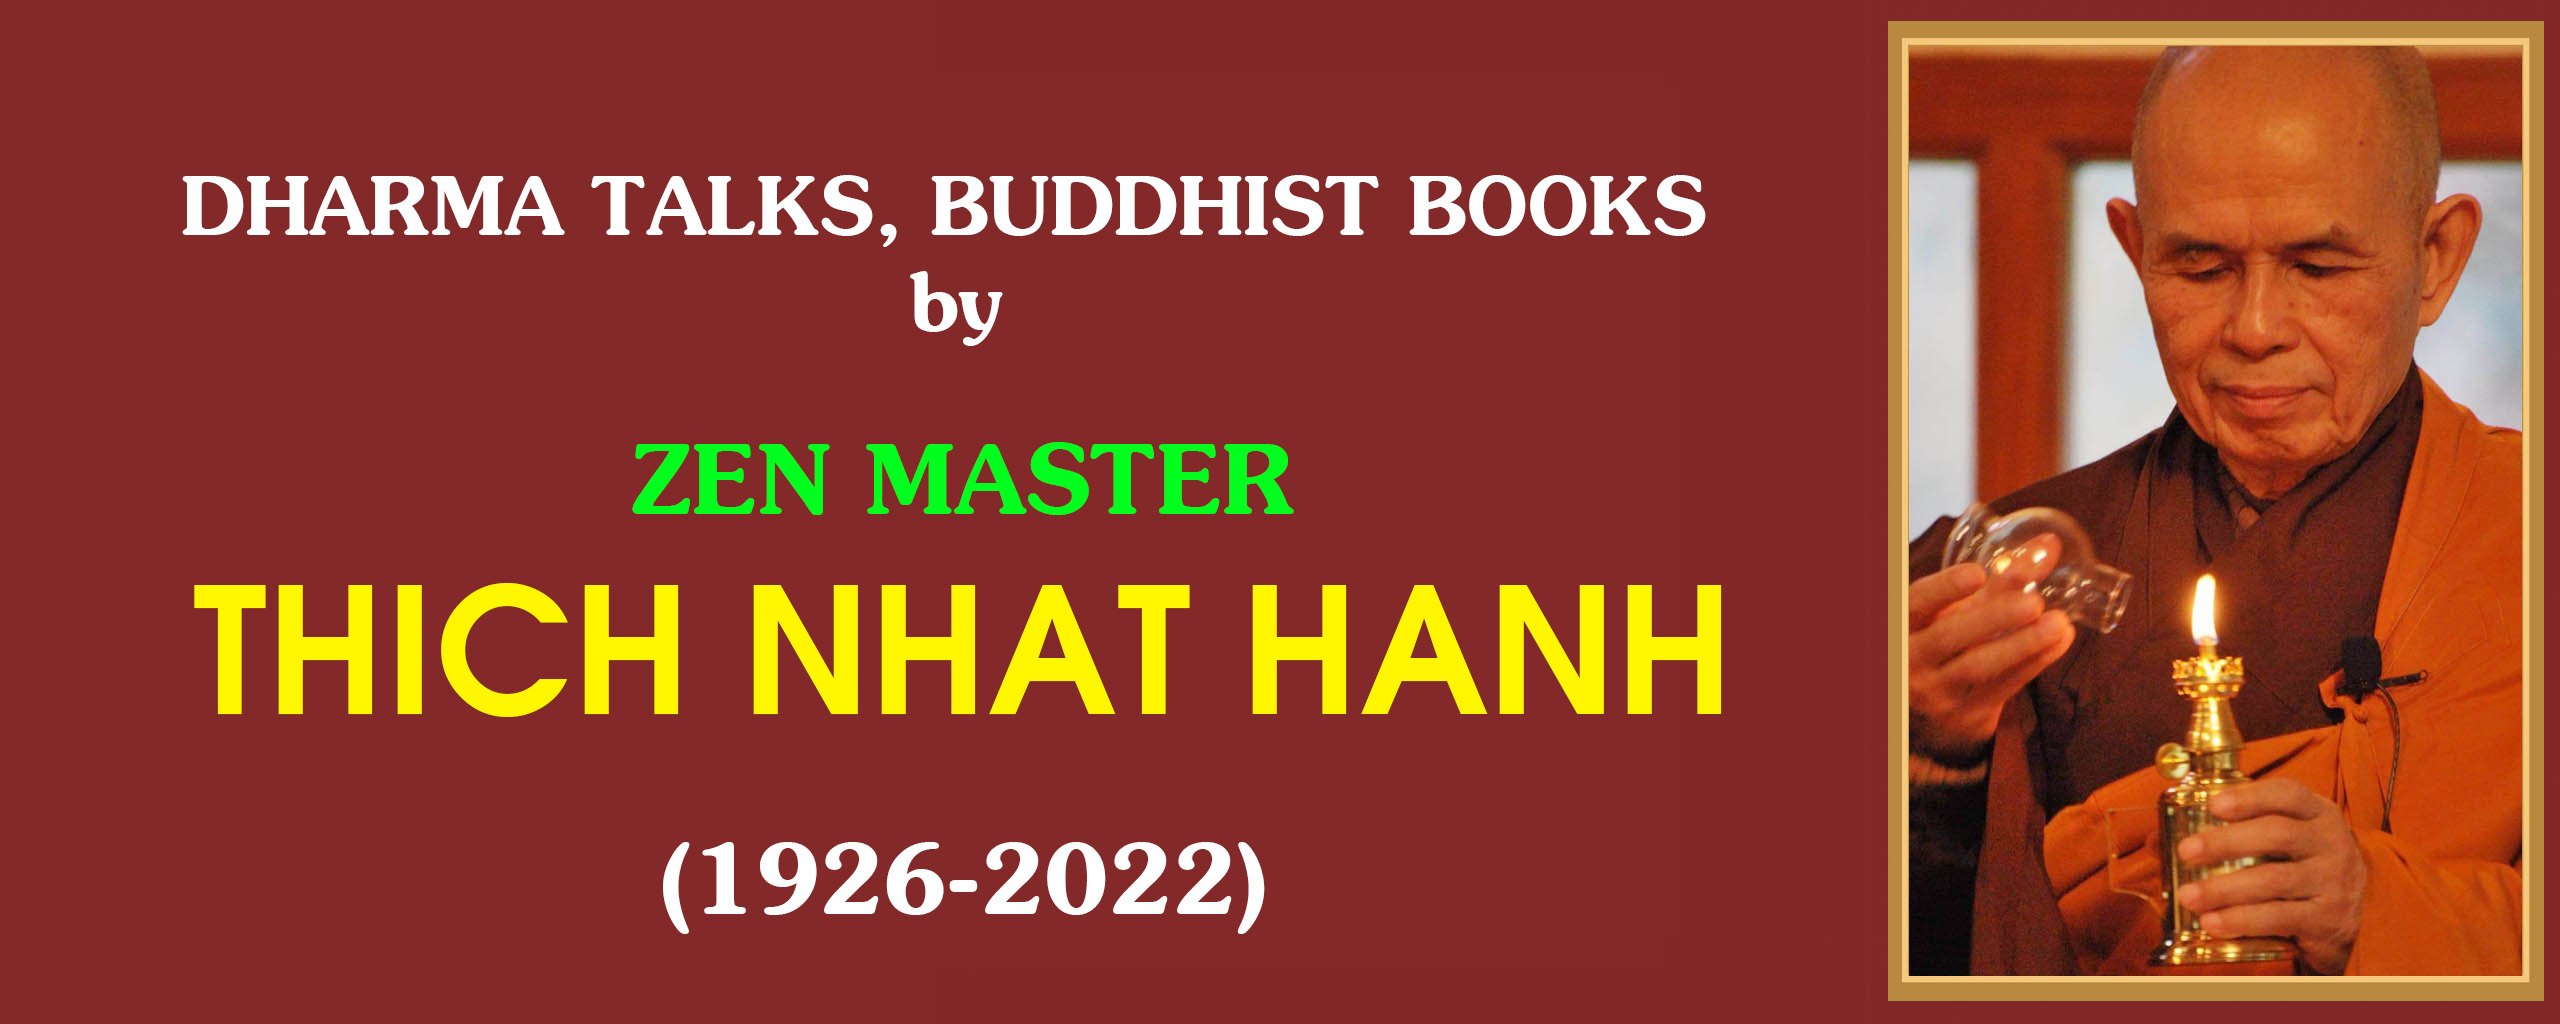 Zen-Master-Thich-Nhat-Hanh